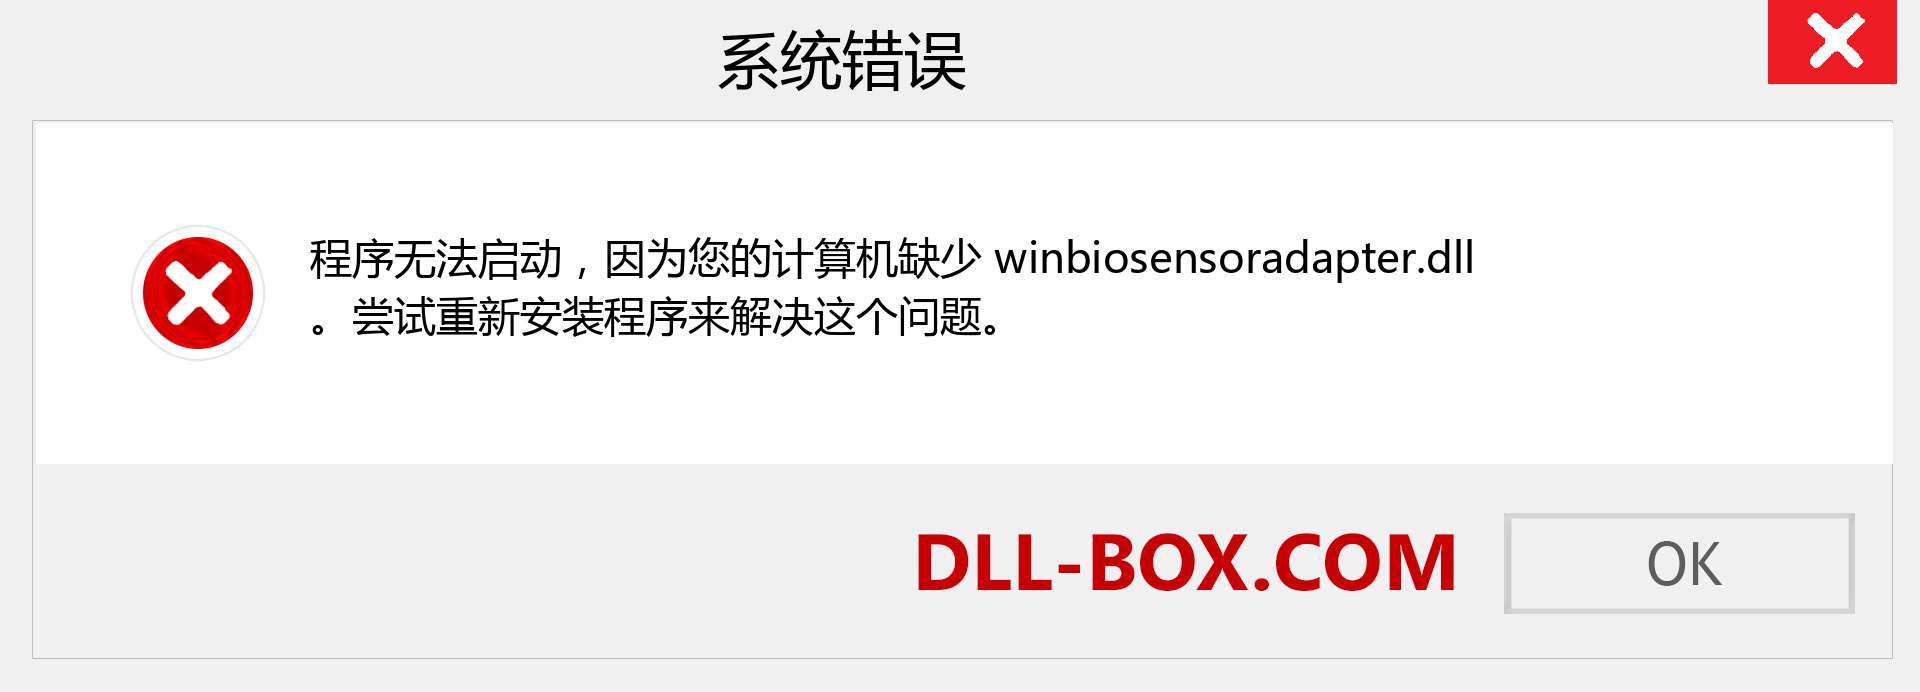 winbiosensoradapter.dll 文件丢失？。 适用于 Windows 7、8、10 的下载 - 修复 Windows、照片、图像上的 winbiosensoradapter dll 丢失错误